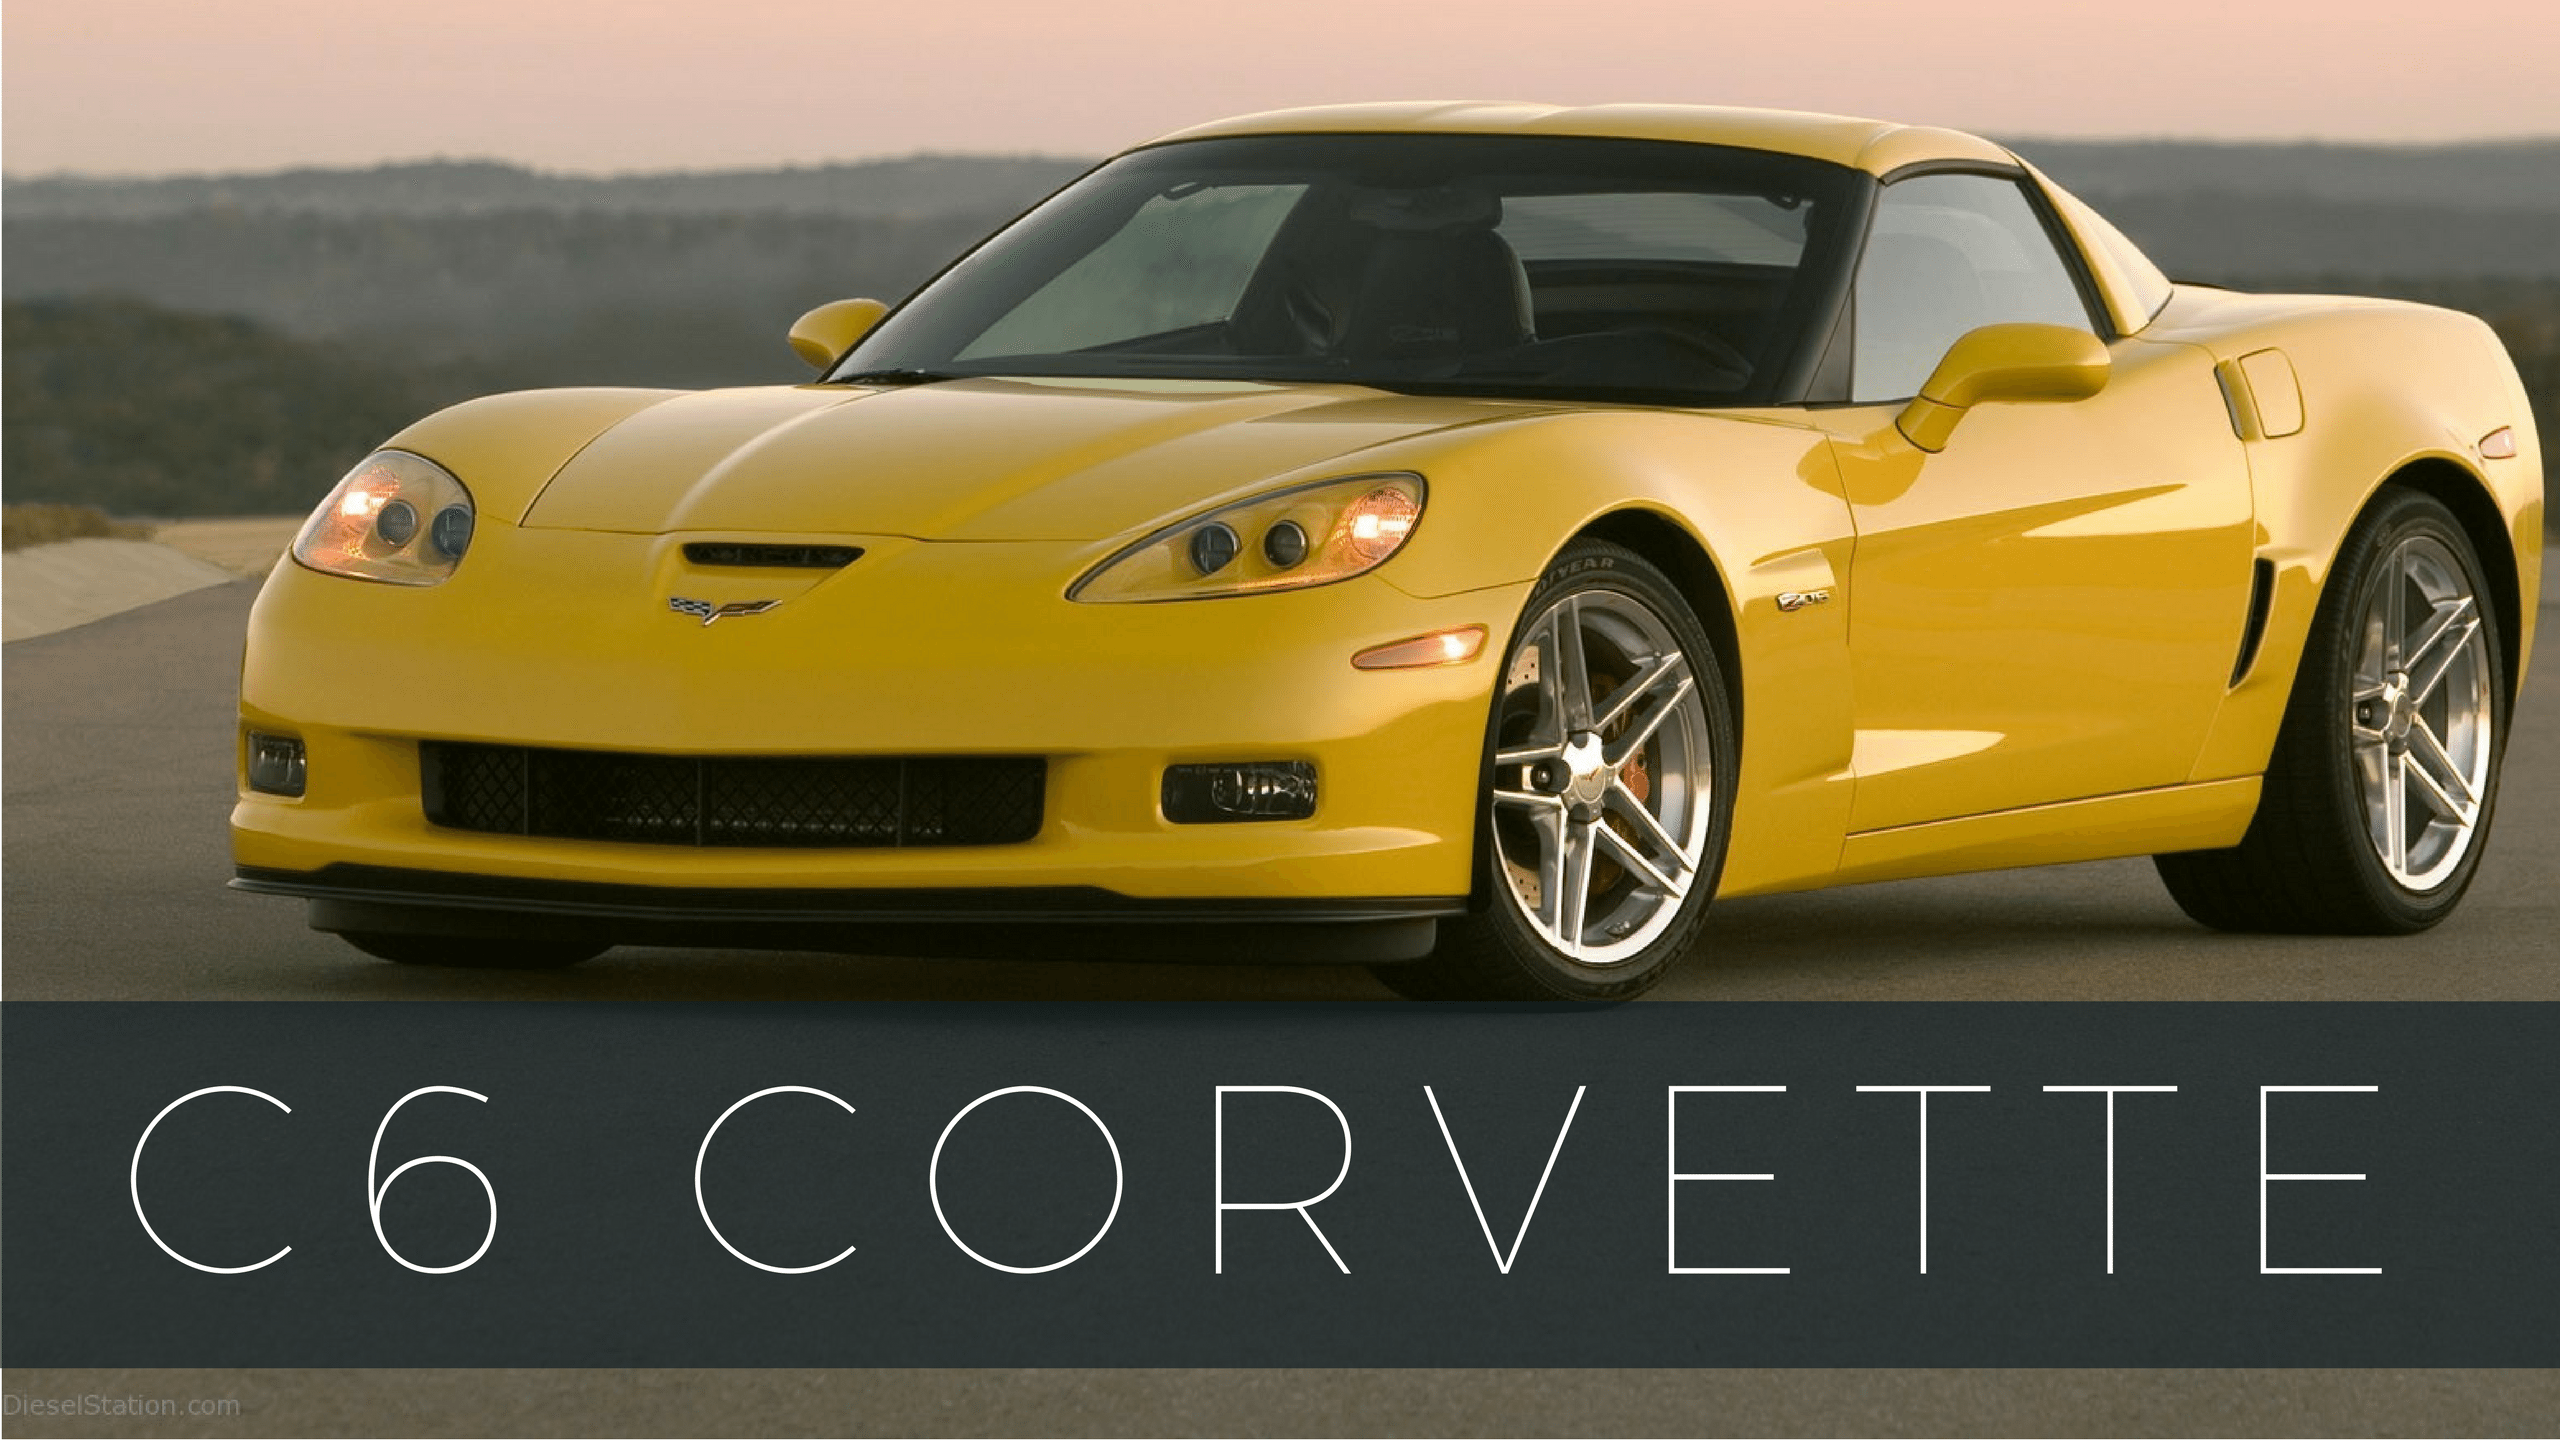 C6 Corvette Old Logo - Corvette Models List of Chevrolet Corvette Models & Years